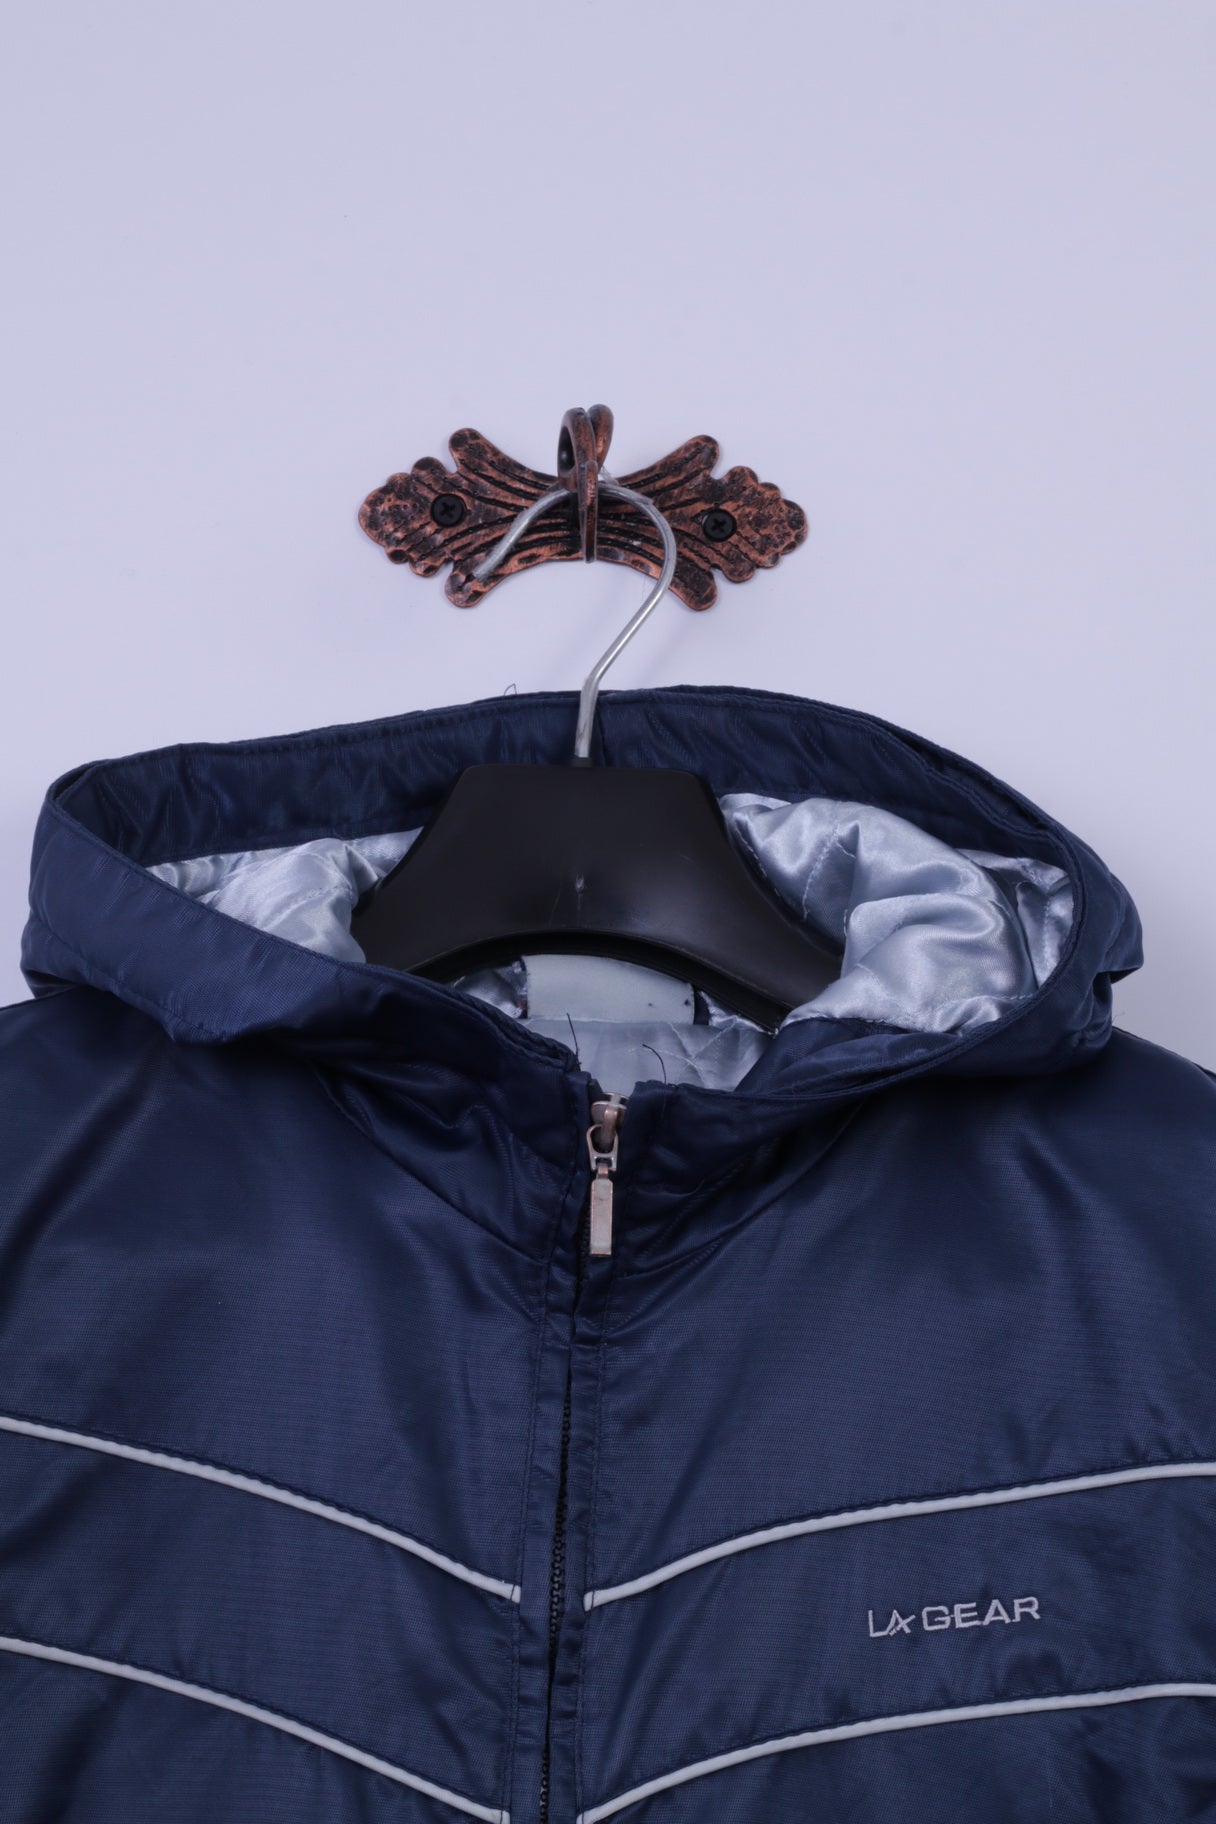 La Gear Womens 12 S Coat Navy 100% Nylon Shiny Hooded Full Zipper Casual Top